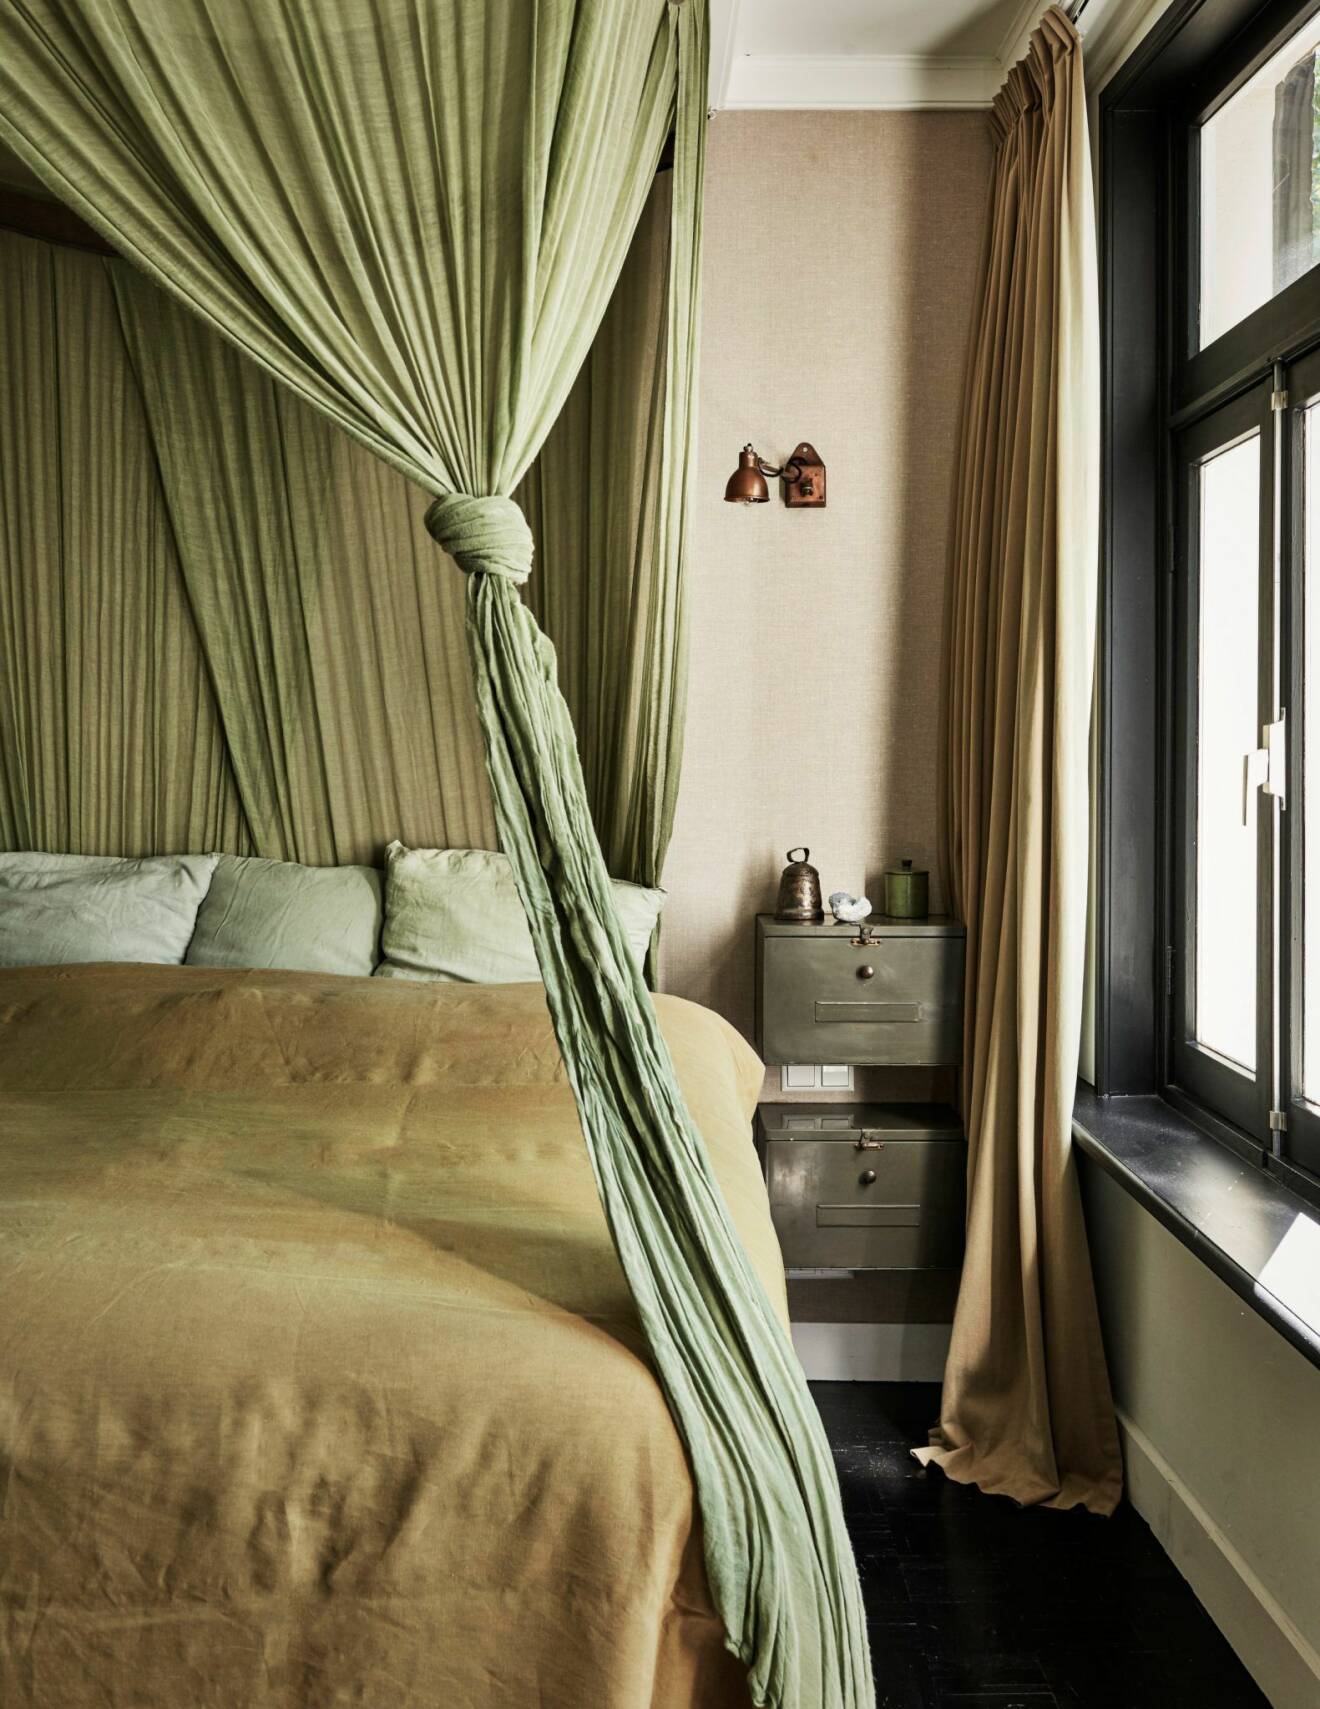 Sovrum i gröna toner i hemmet i Amsterdam.